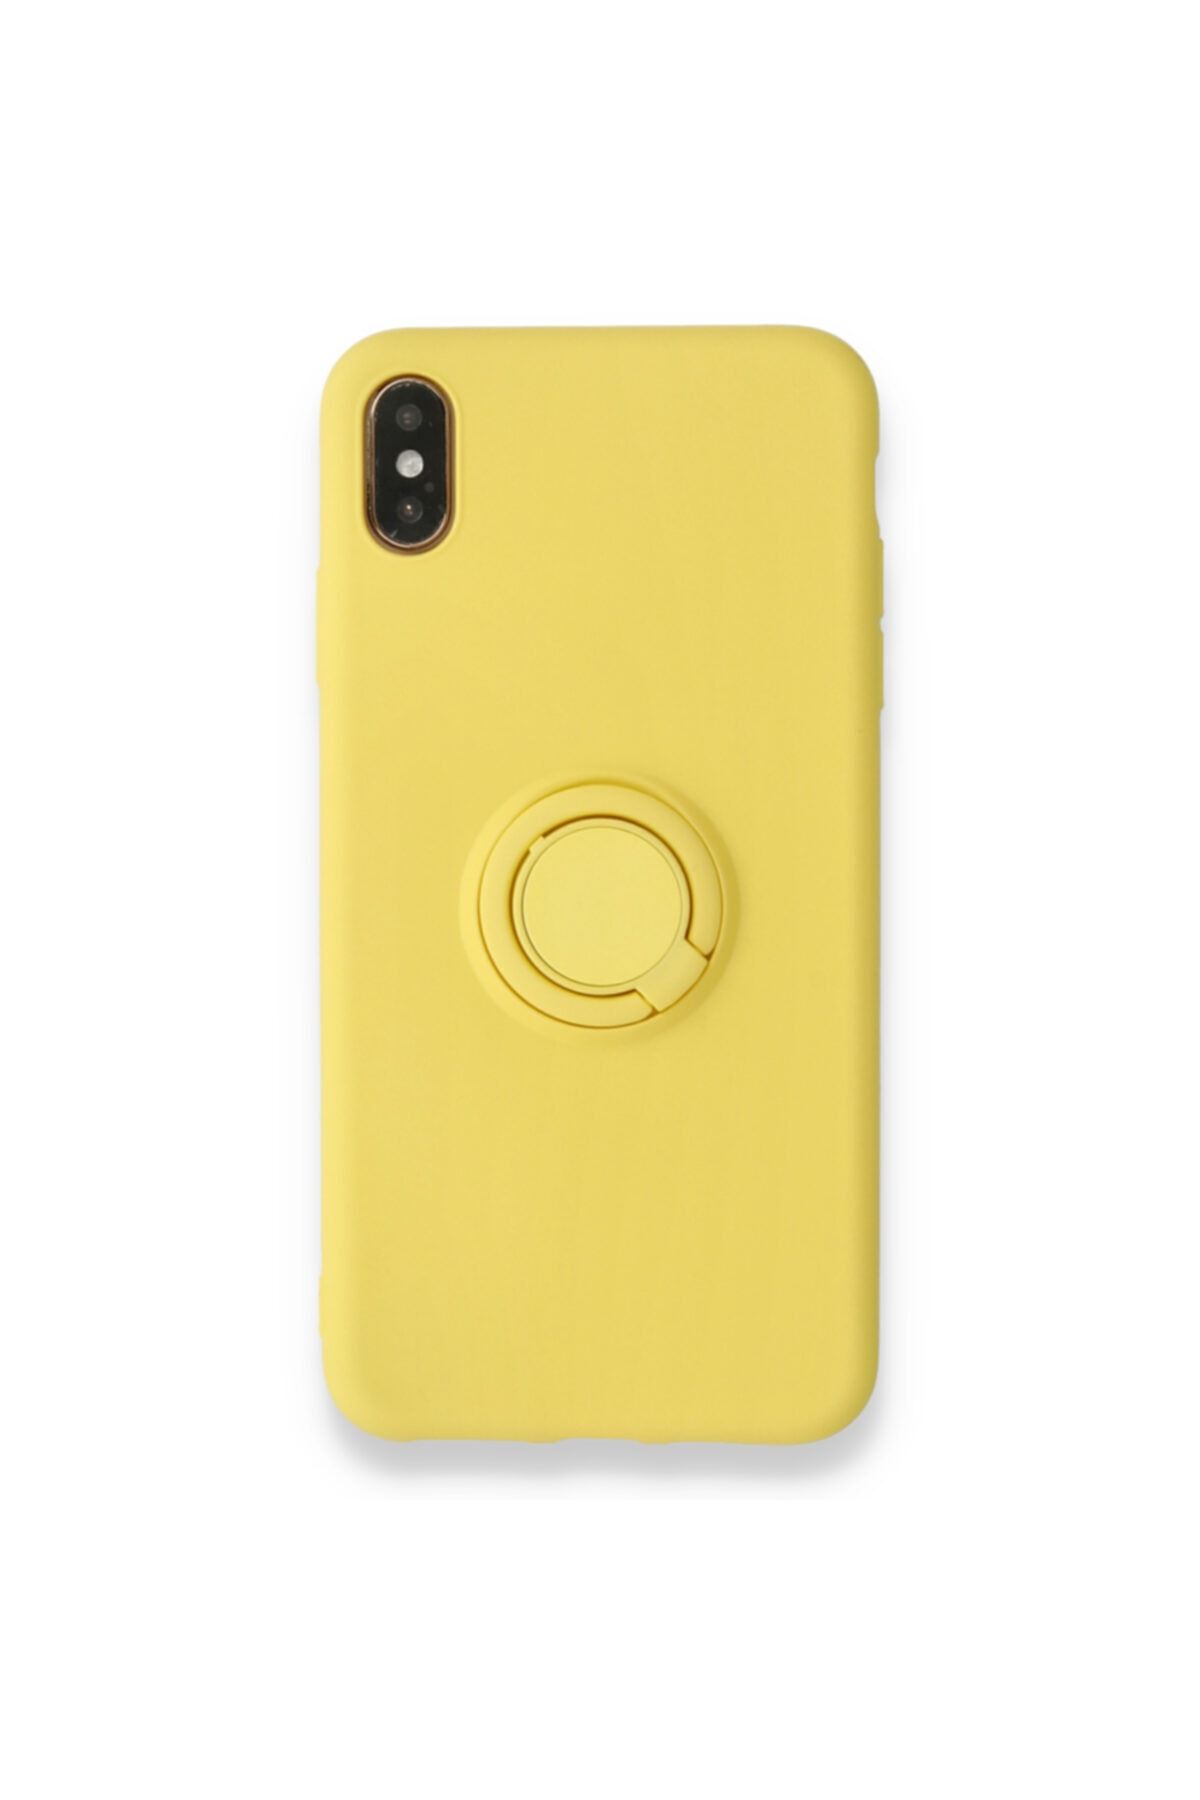 NewFace Iphone X Kılıf Selfie Yüzüklü Standlı Soft Yüzeyli Silikon Kapak Kılıf Sarı